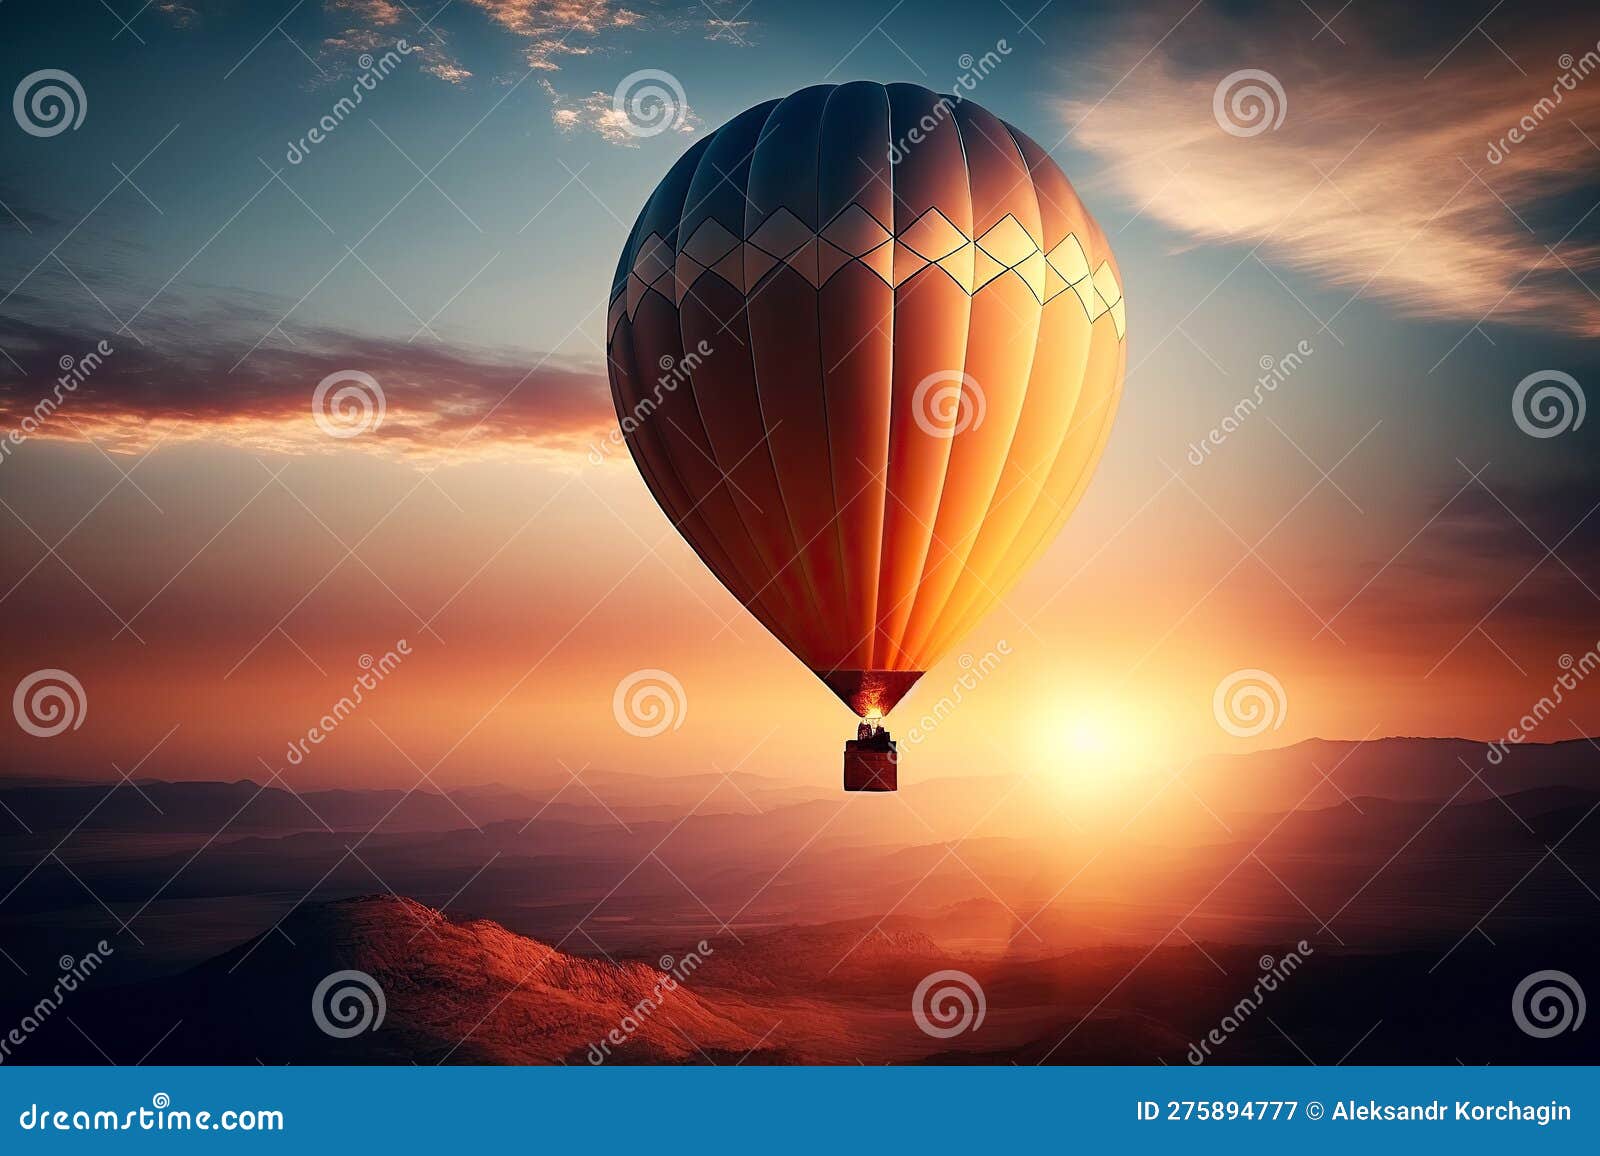 https://thumbs.dreamstime.com/z/ballon-volant-dans-le-ciel-sur-fond-de-coucher-soleil-illustration-d-ai-g%C3%A9n%C3%A9rative-275894777.jpg